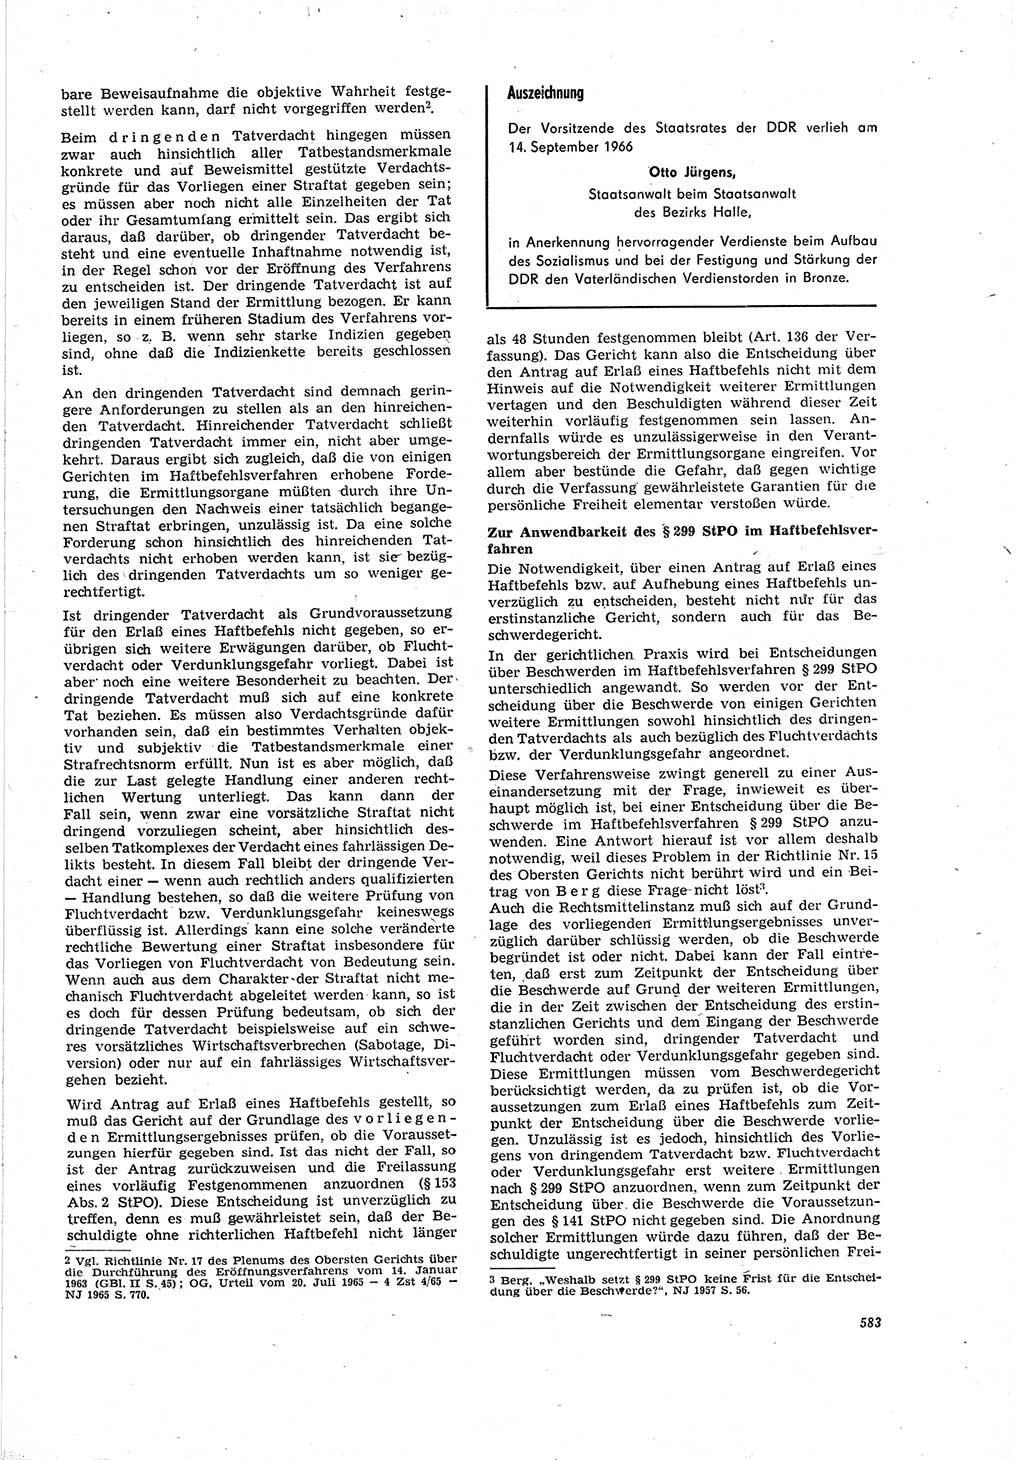 Neue Justiz (NJ), Zeitschrift für Recht und Rechtswissenschaft [Deutsche Demokratische Republik (DDR)], 20. Jahrgang 1966, Seite 583 (NJ DDR 1966, S. 583)